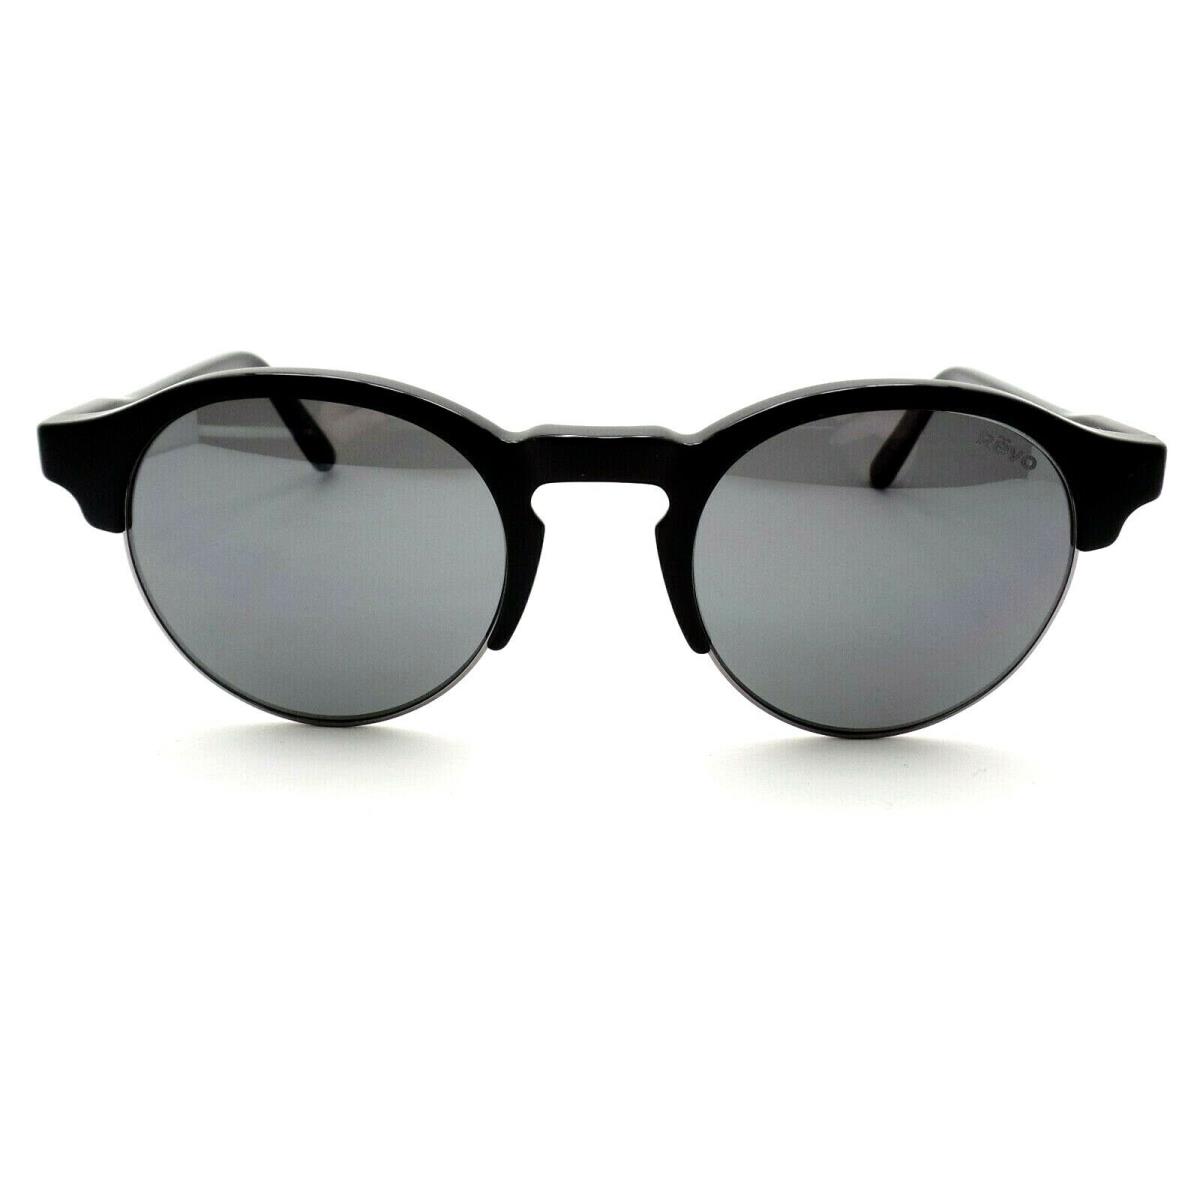 Revo sunglasses Gloss Black Gun - Black Frame